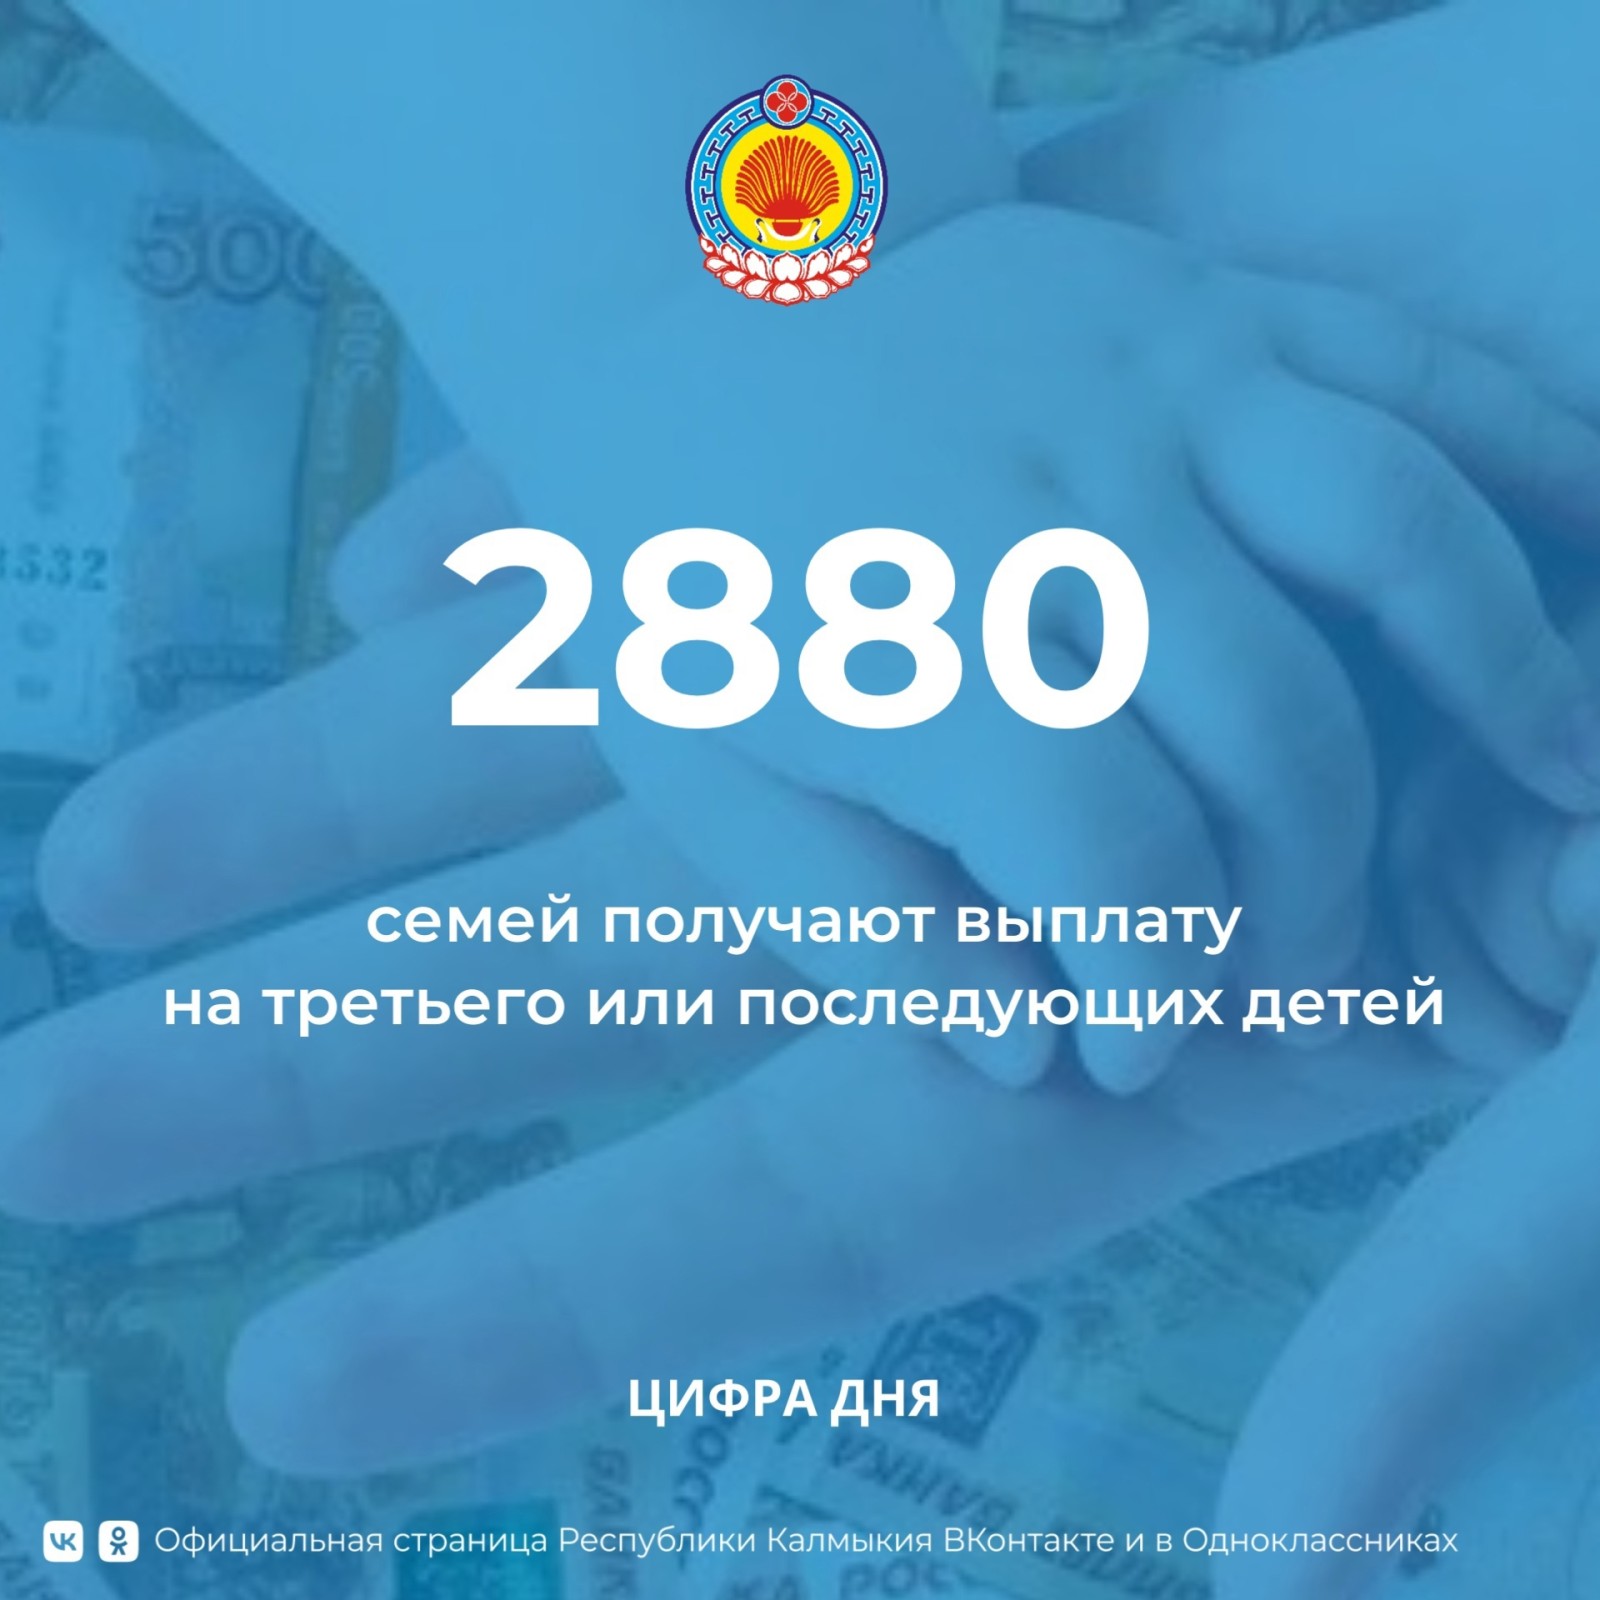 С начала года в Калмыкии более 2 тыс. семей получают выплату на третьего или последующих детей